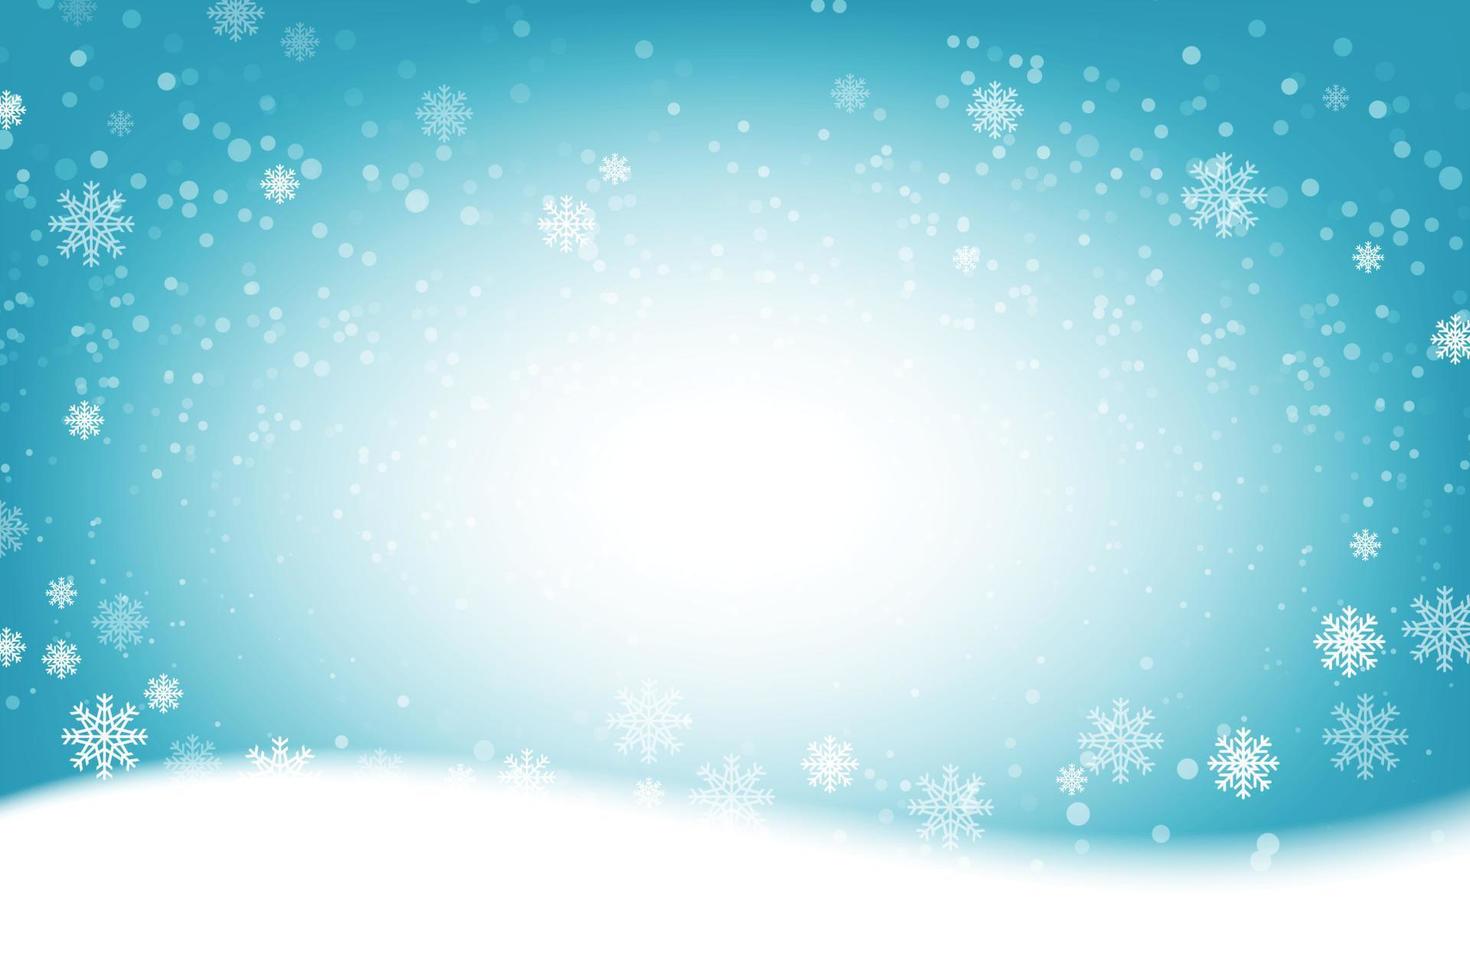 flocos de neve e queda de neve em um fundo azul frio de inverno. ilustrador vetor eps 10.